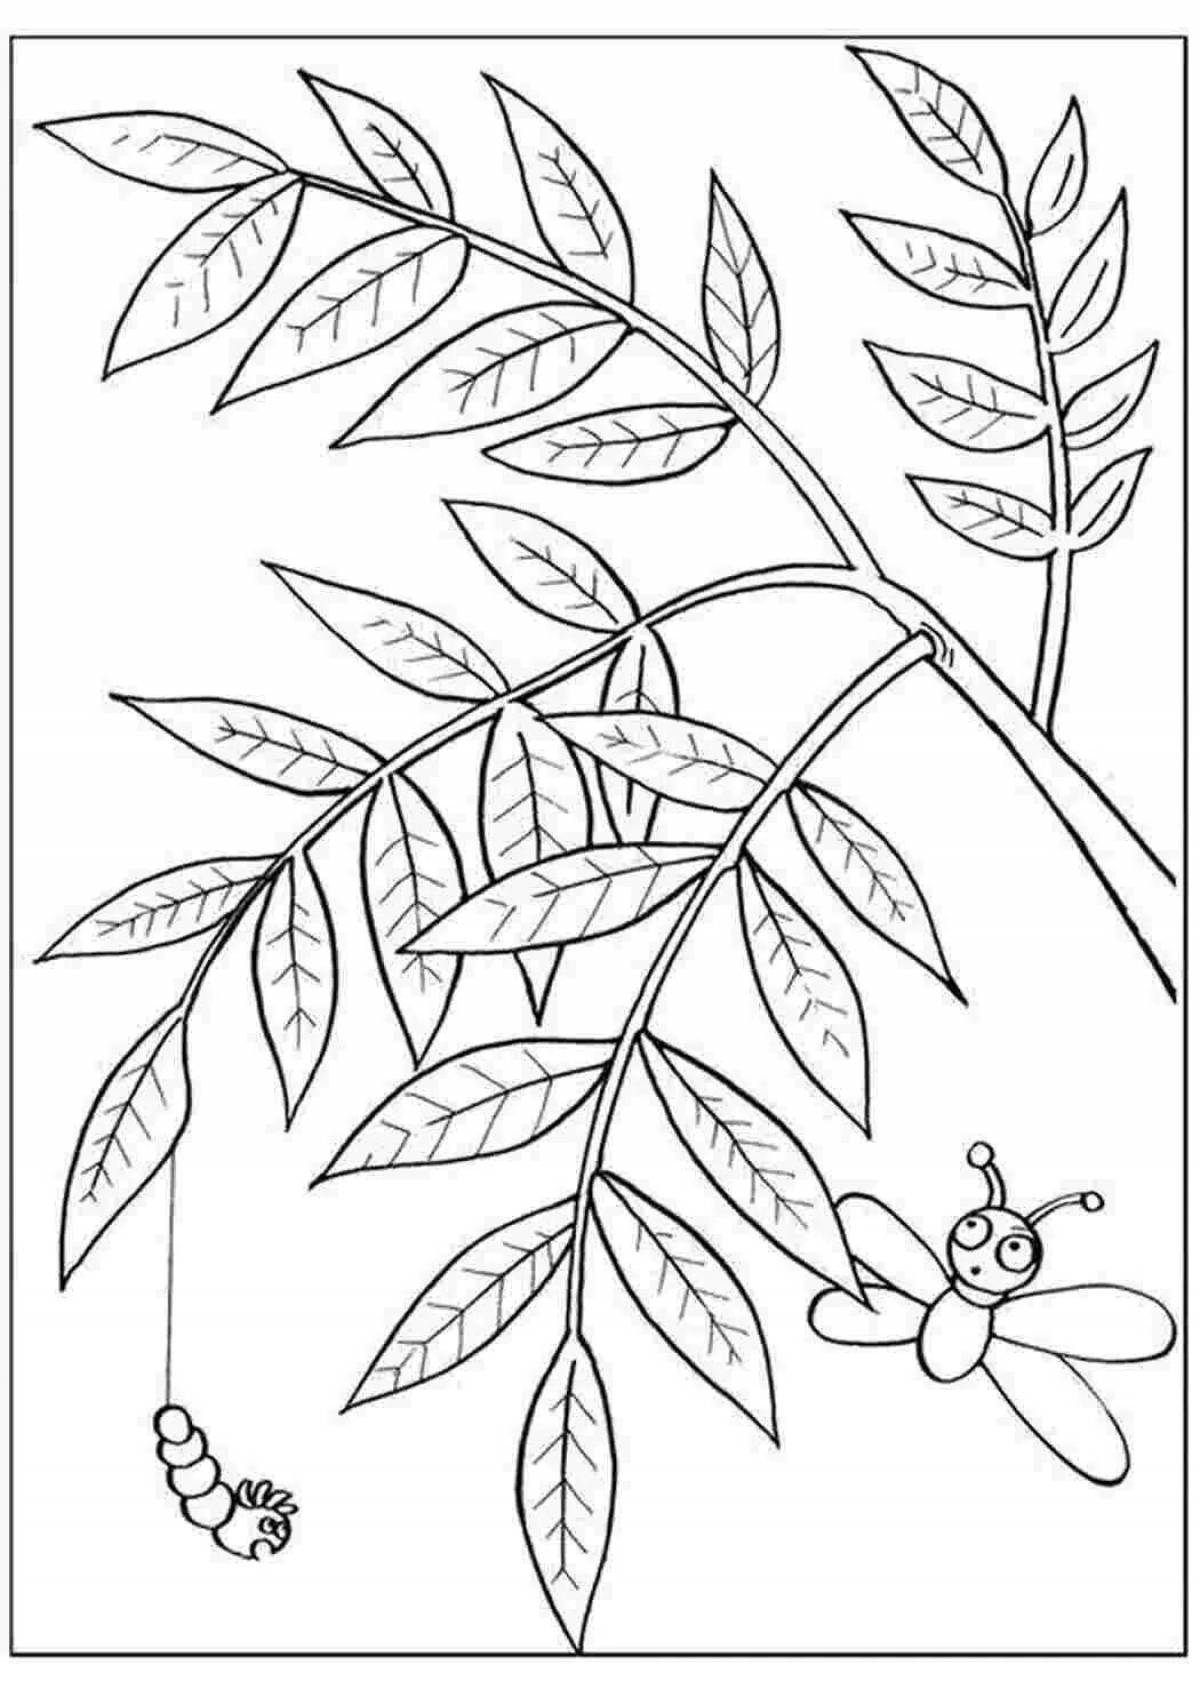 Привлекательная страница раскраски листьев рябины